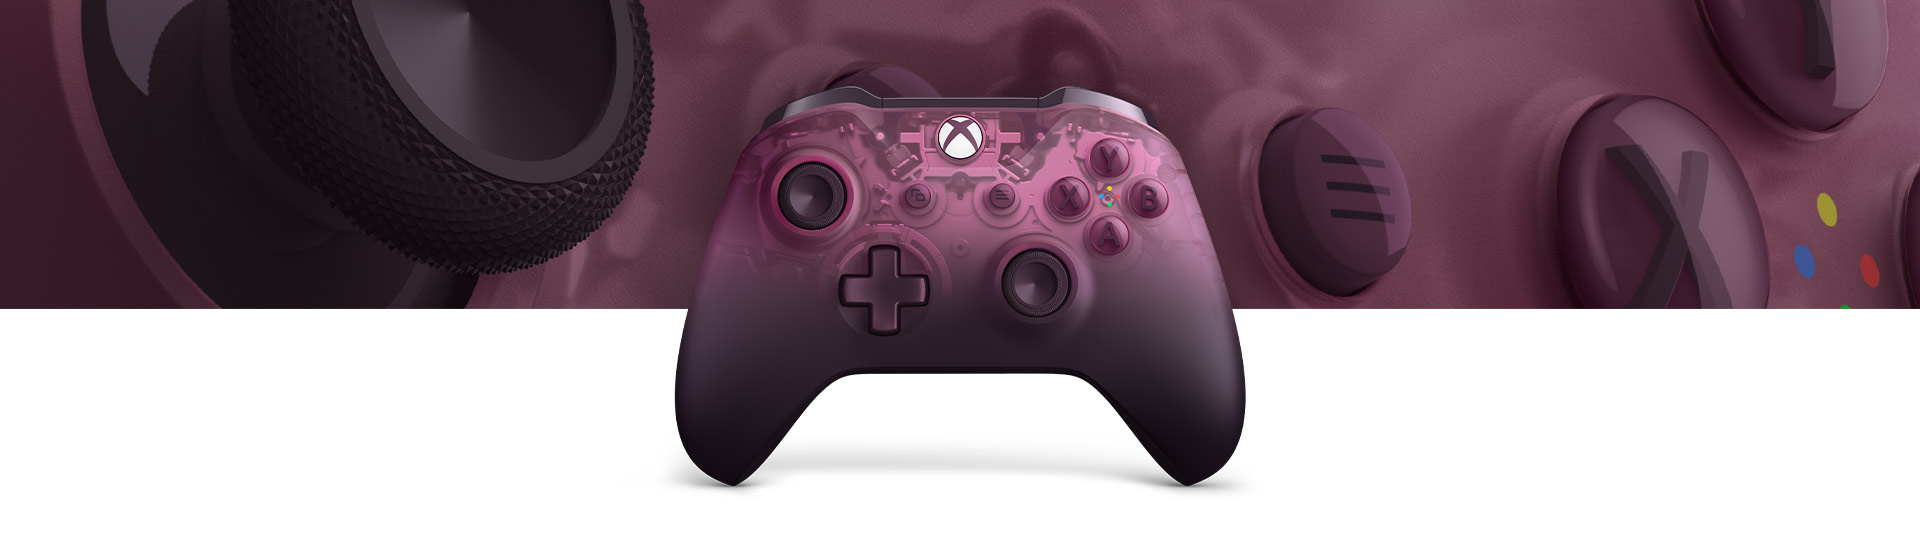 Ασύρματο χειριστήριο Xbox – Phantom magenta Special Edition με κοντινή όψη της επιφάνειας του χειριστηρίου